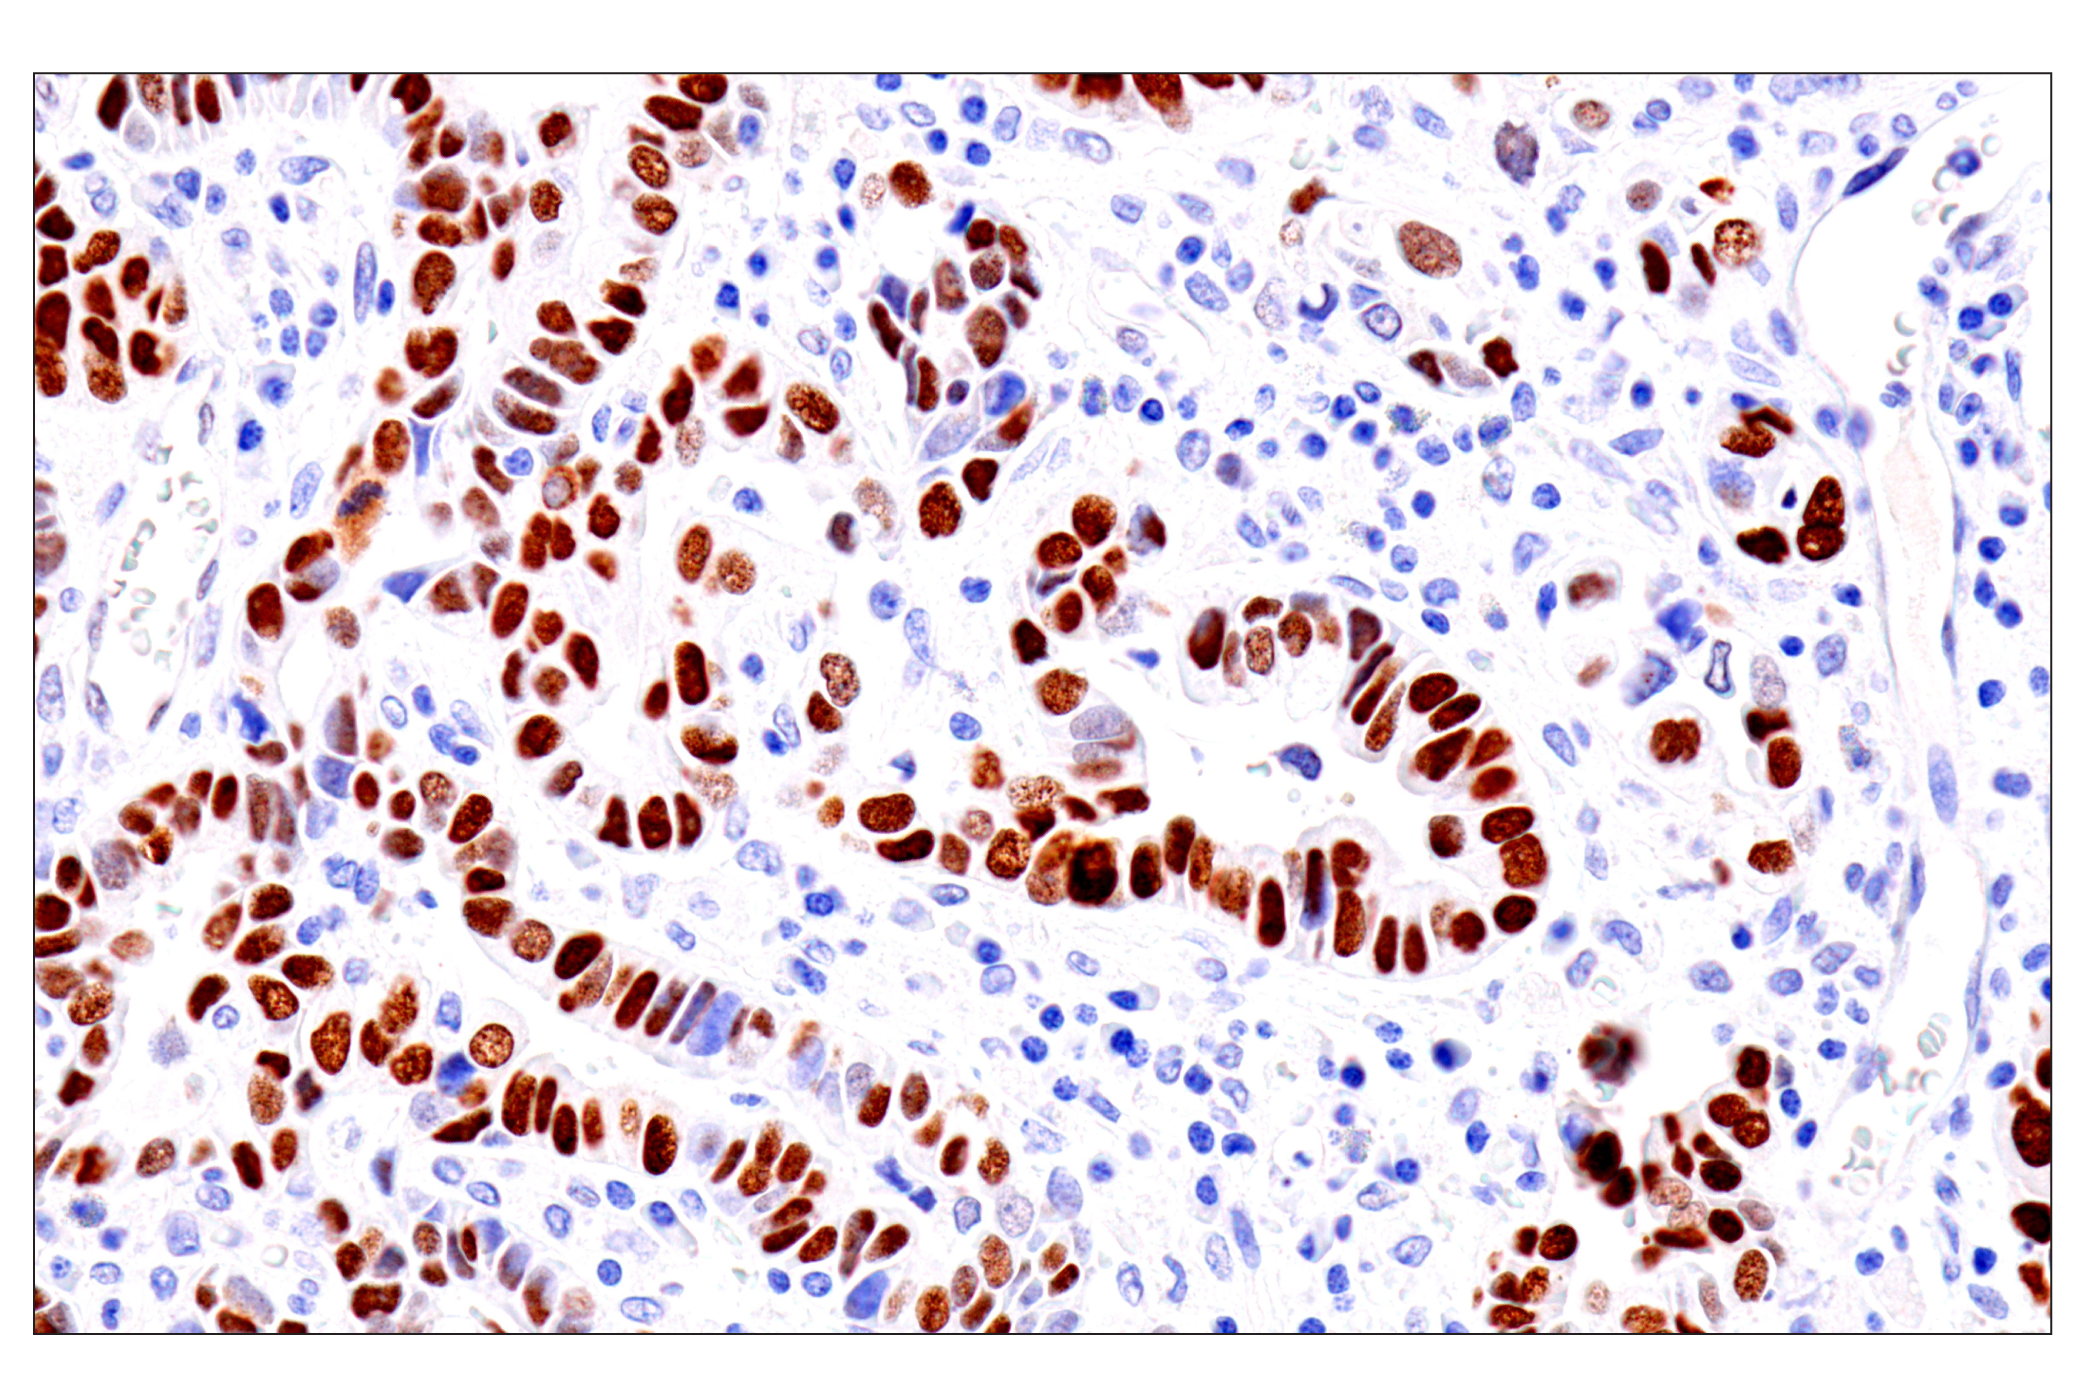  Image 6: GATA Transcription Factor Antibody Sampler Kit